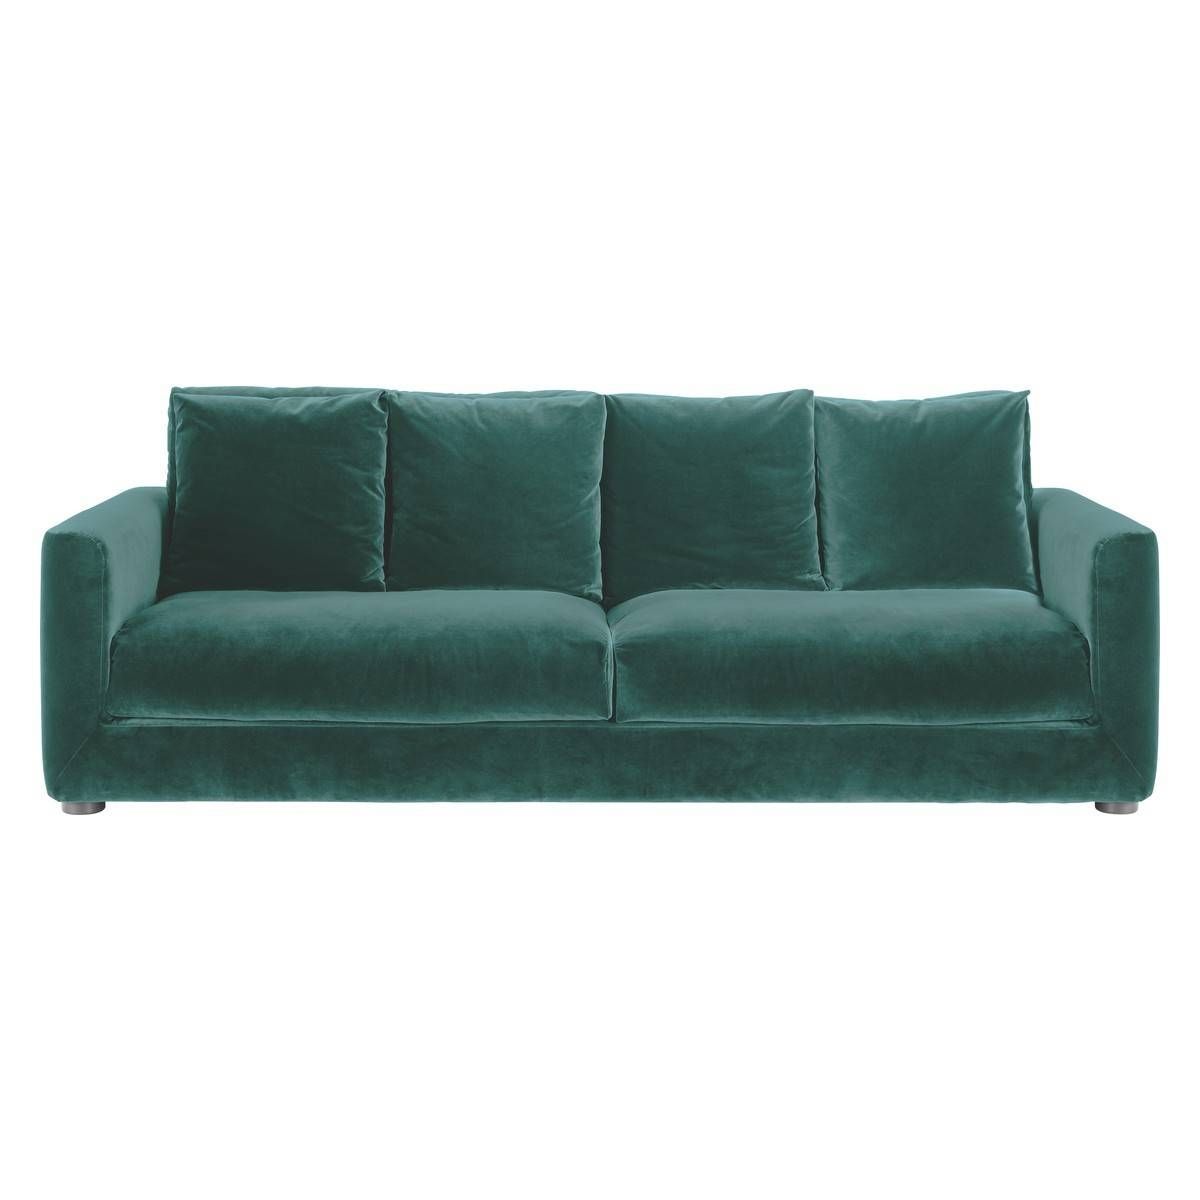 Rupert Emerald Green Velvet 3 Seater Sofa Bed | Buy Now At Habitat Uk Inside Emerald Green Sofas (View 12 of 15)